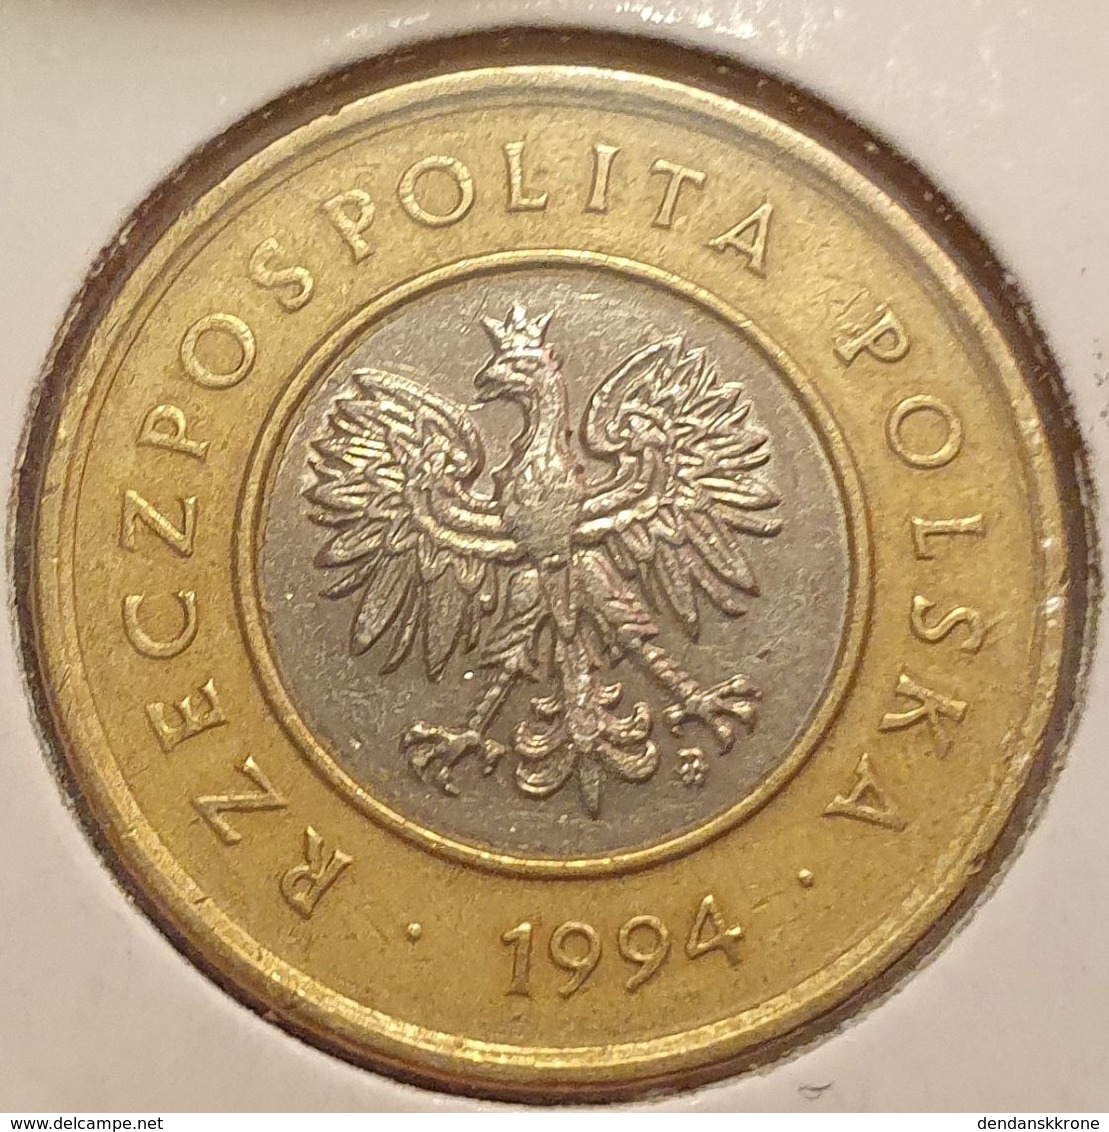 2 Zlote (Zloty) Pologne (Polen-Polska) 1994 - Bi-metal - Polen